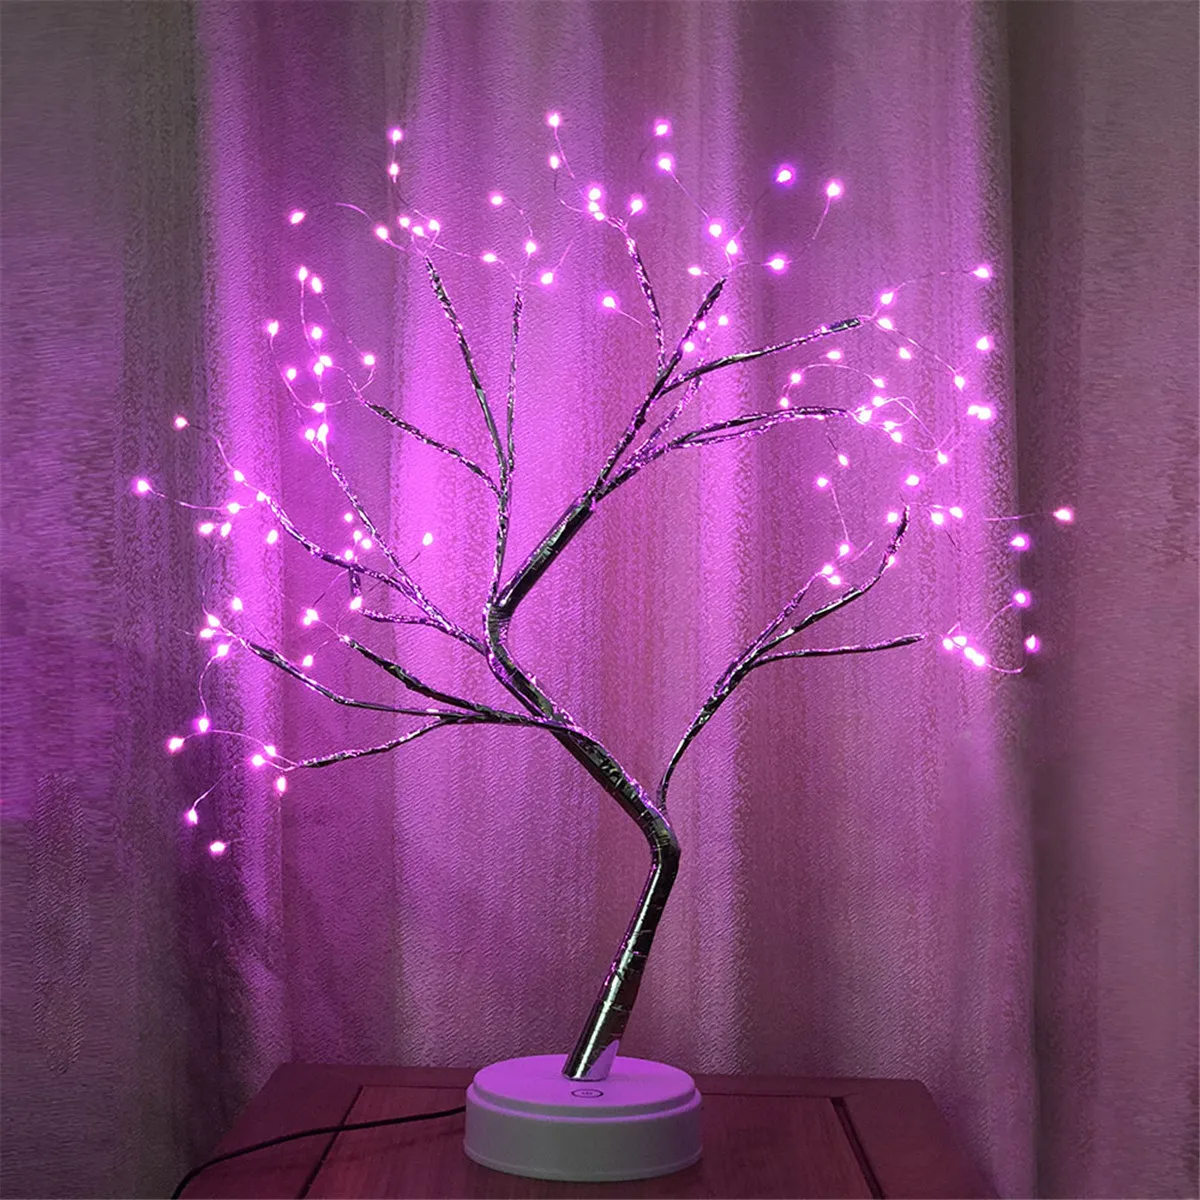 Светодиодный светильник с имитацией дерева 108 светодиодный USB светильник с огненным деревом медная проволока настольные лампы ночной Светильник для дома, спальни, свадьбы, Рождества